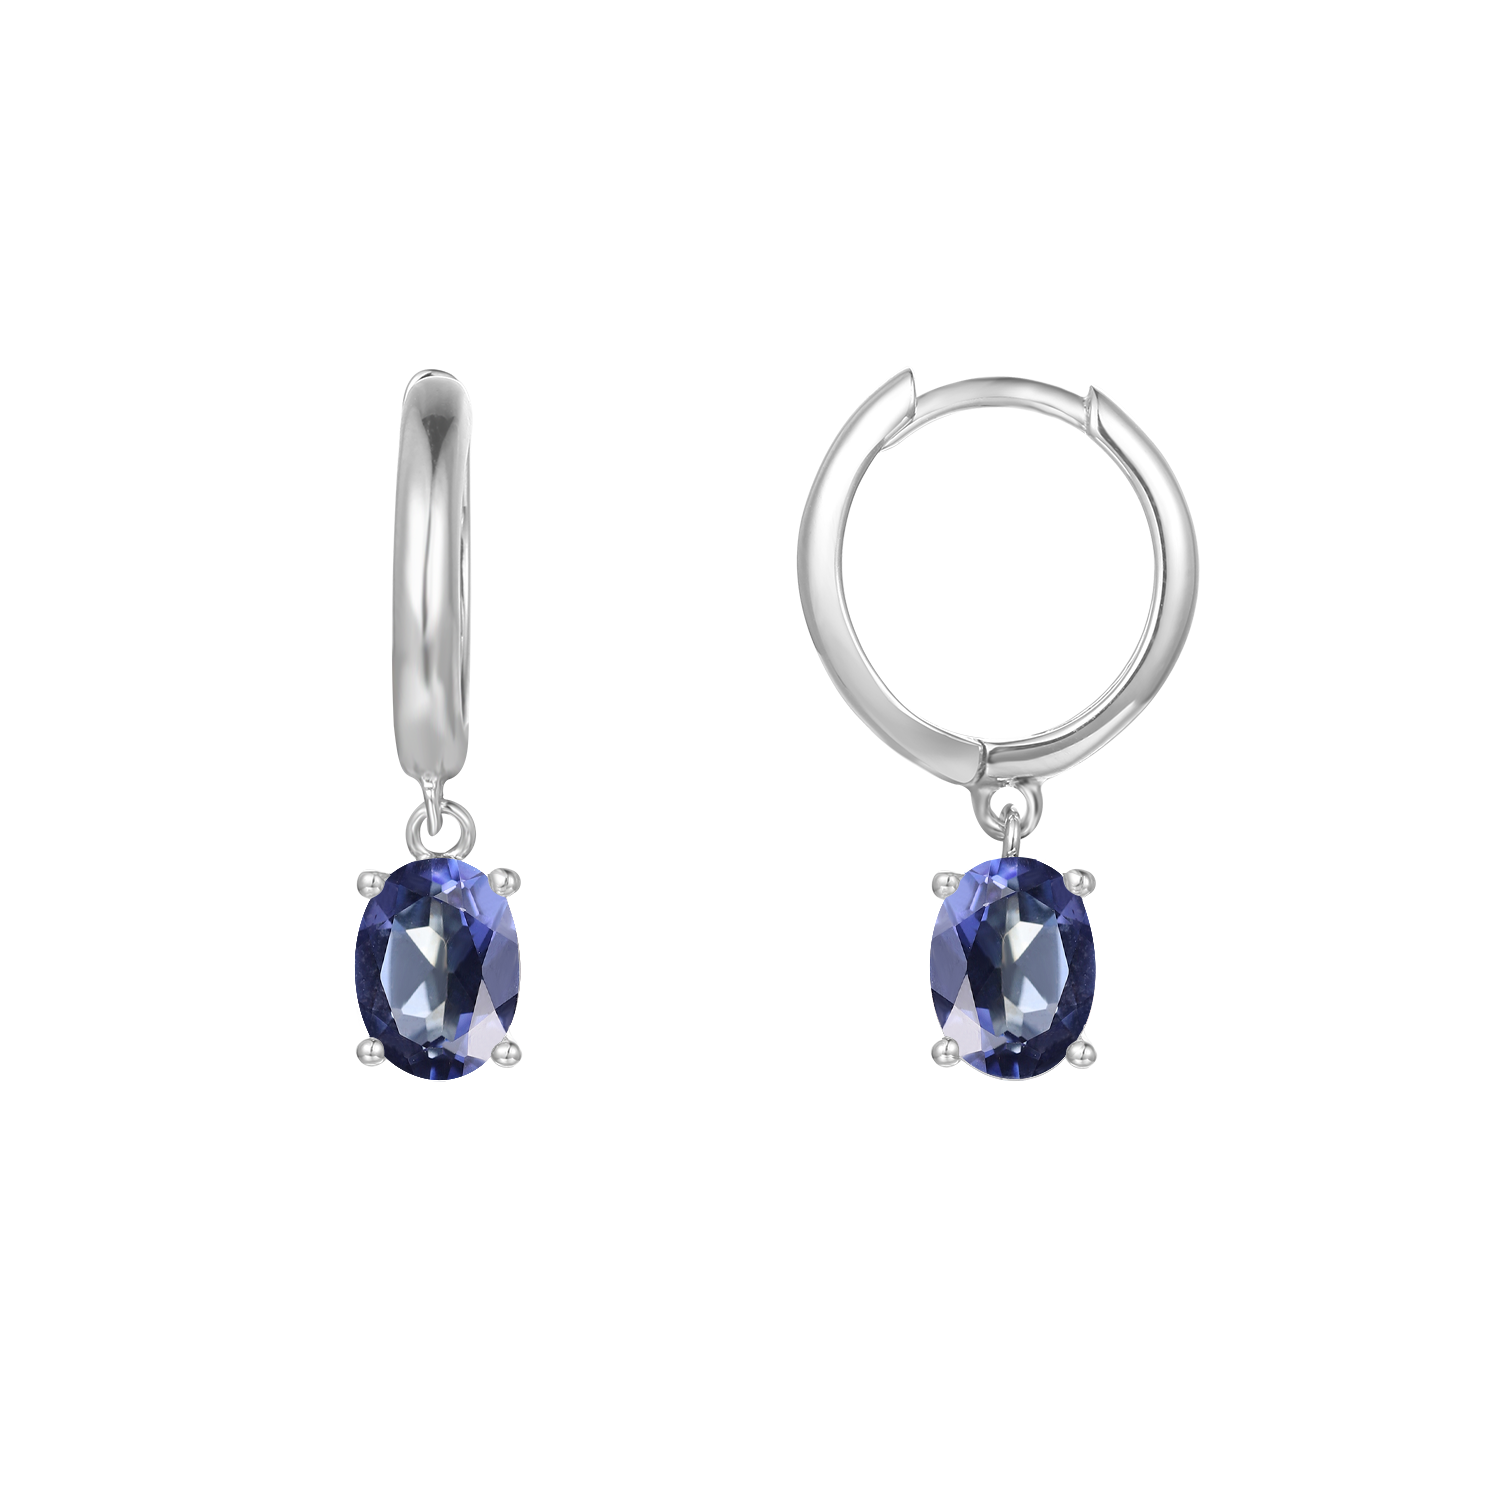 GEM&#39;S BALLET December Birthstone Jewelry 6x8mmOval Swiss Blue Topaz Gemstone Dangle Earrings in 925 Sterling Silver For Women Iolite Blue 925 Sterling Silver